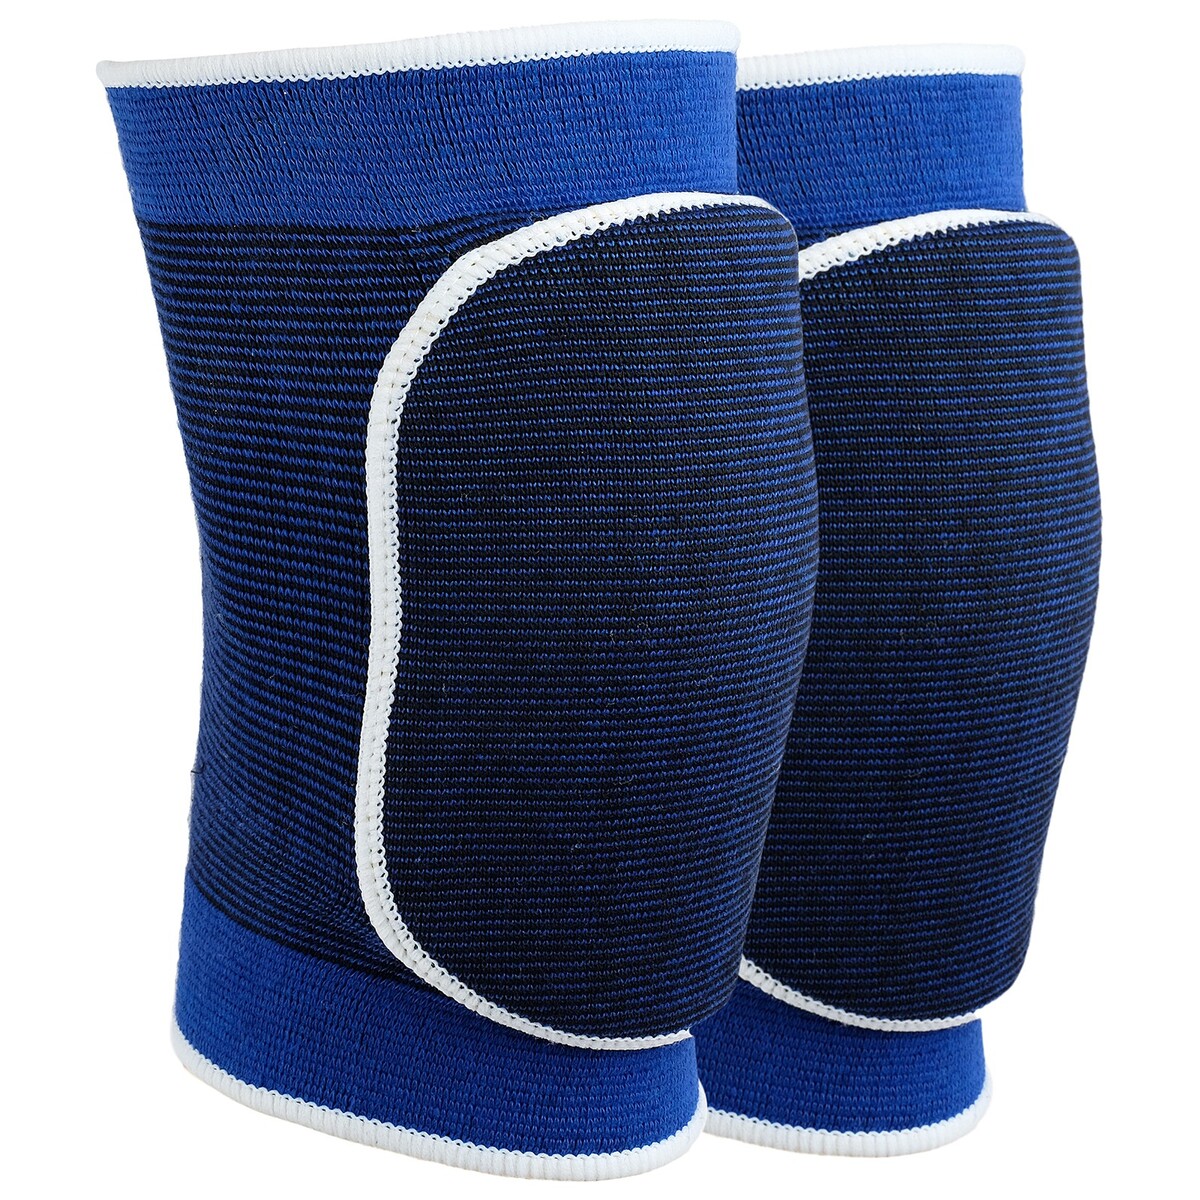 Наколенники спортивные onlytop комплект защиты компания друзей налокотники наколенники полуперчатки синий jb0208468